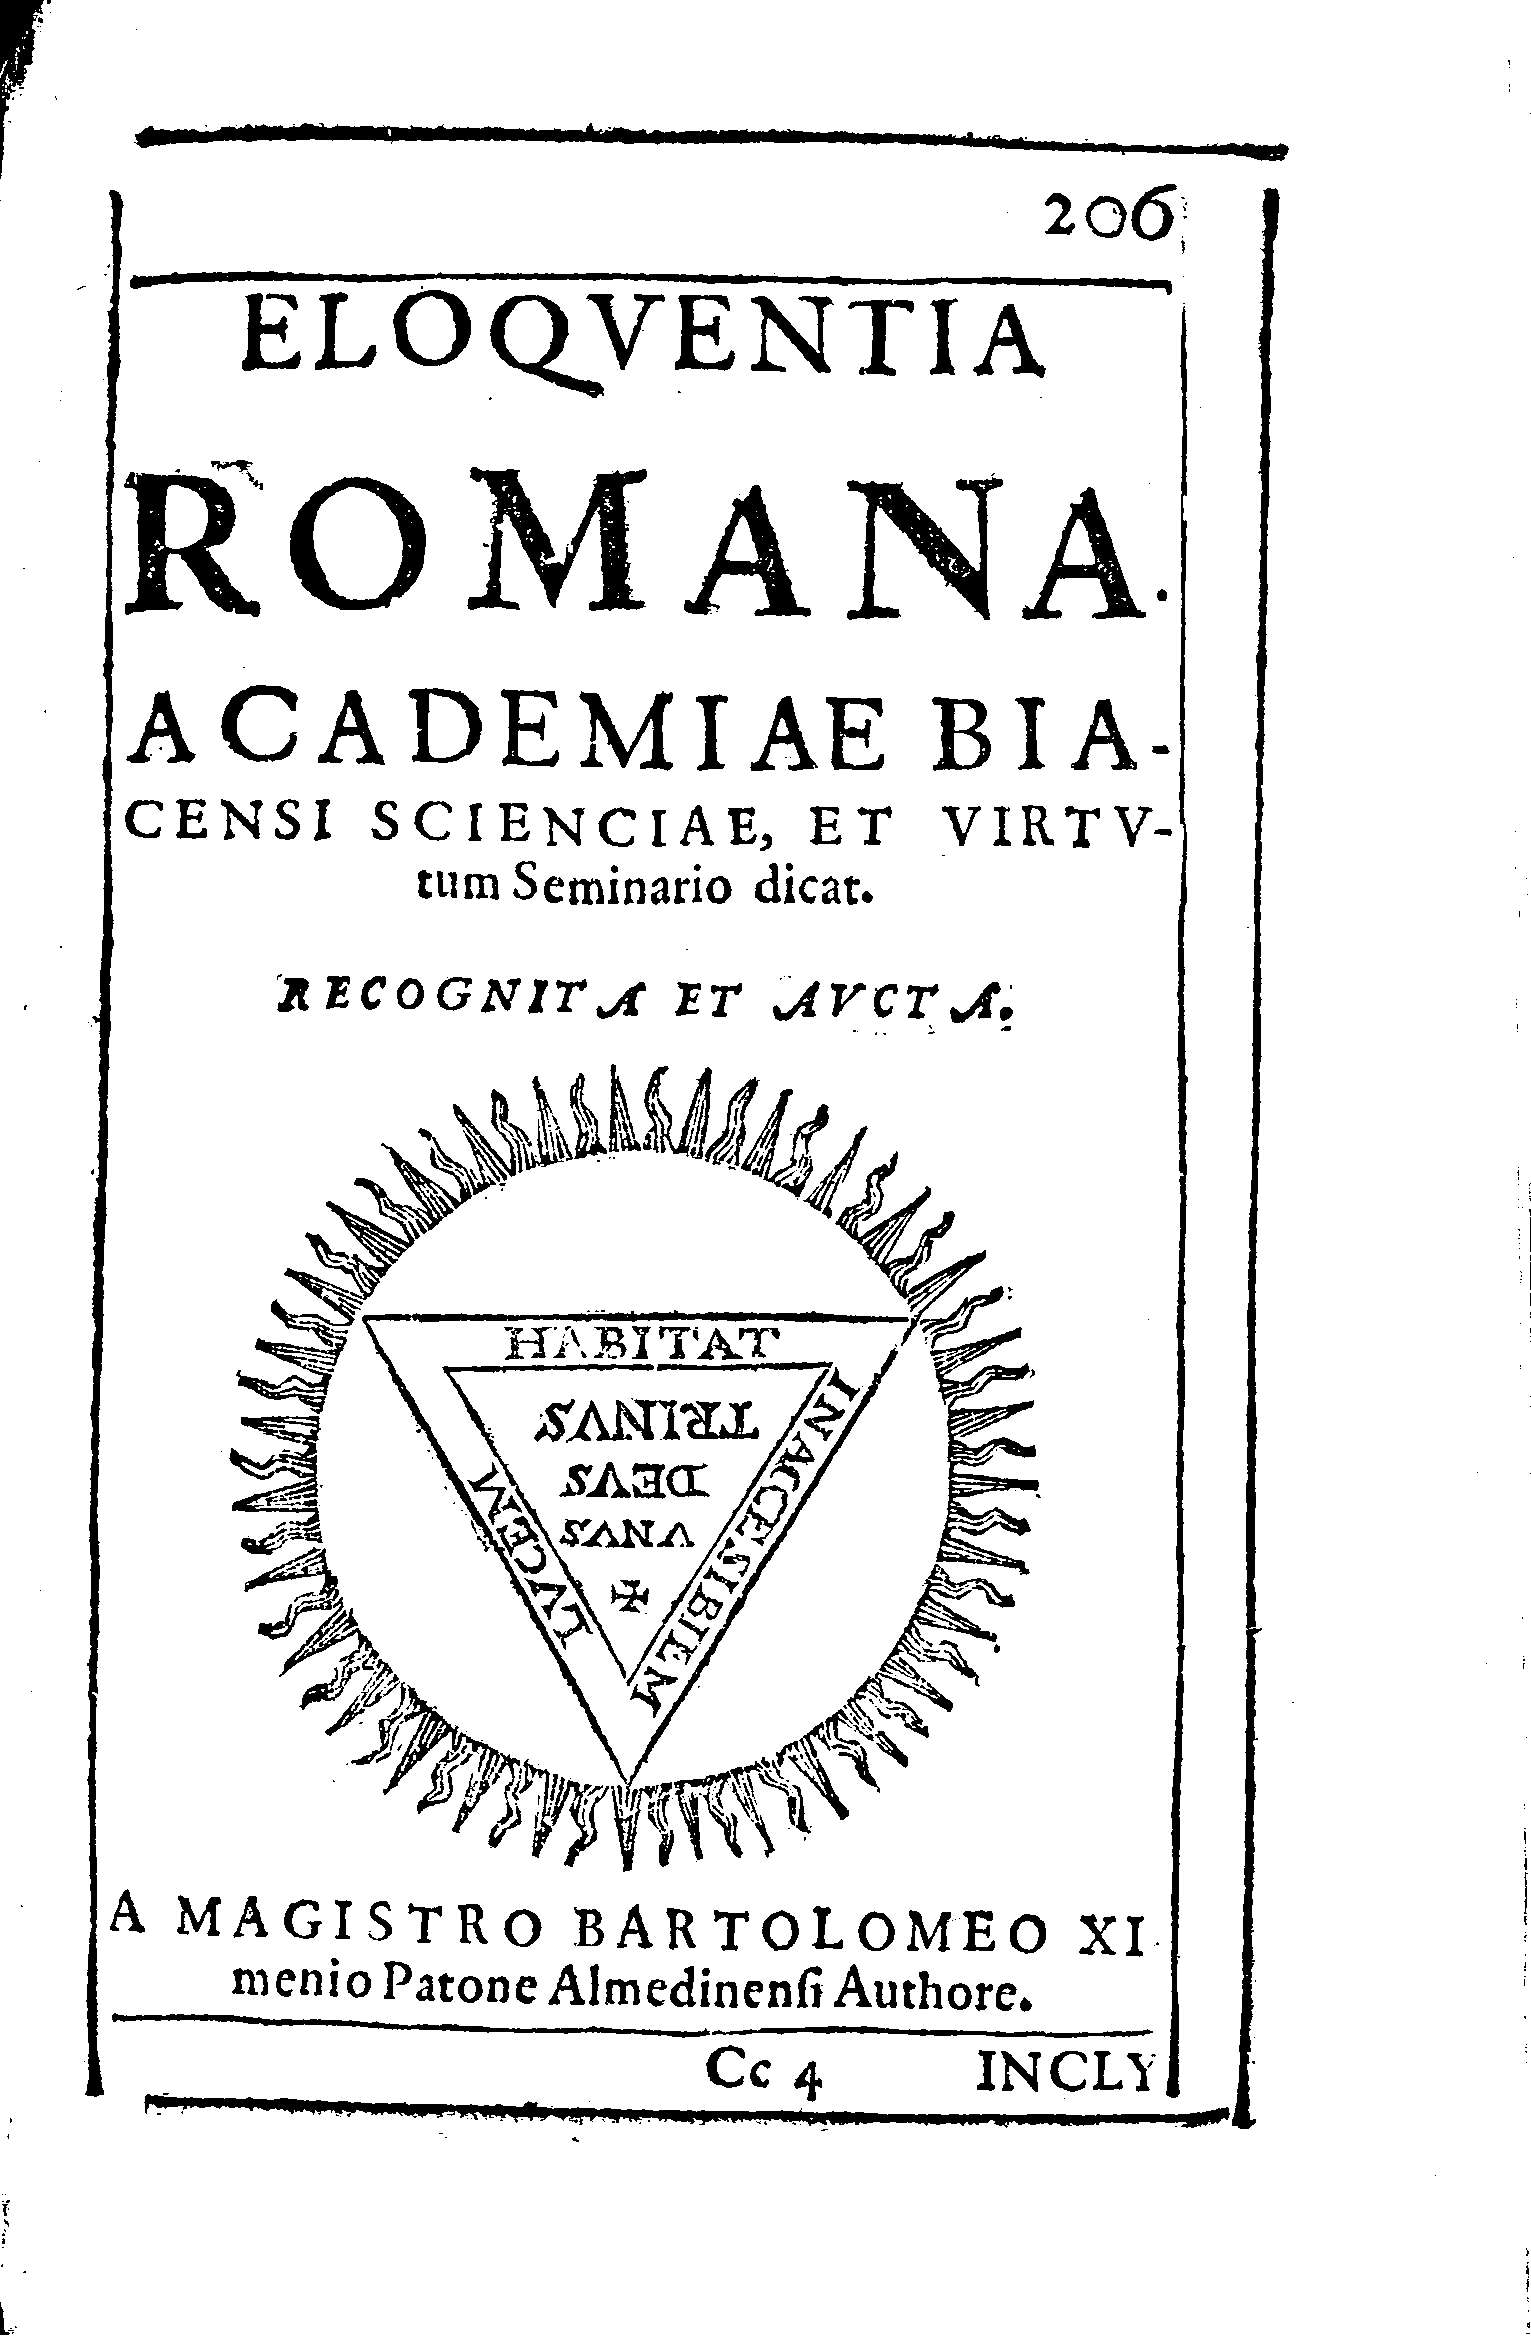 Eloqventia Romana. Academia Biacensi scienciae et virtvtum Seminario dicat    